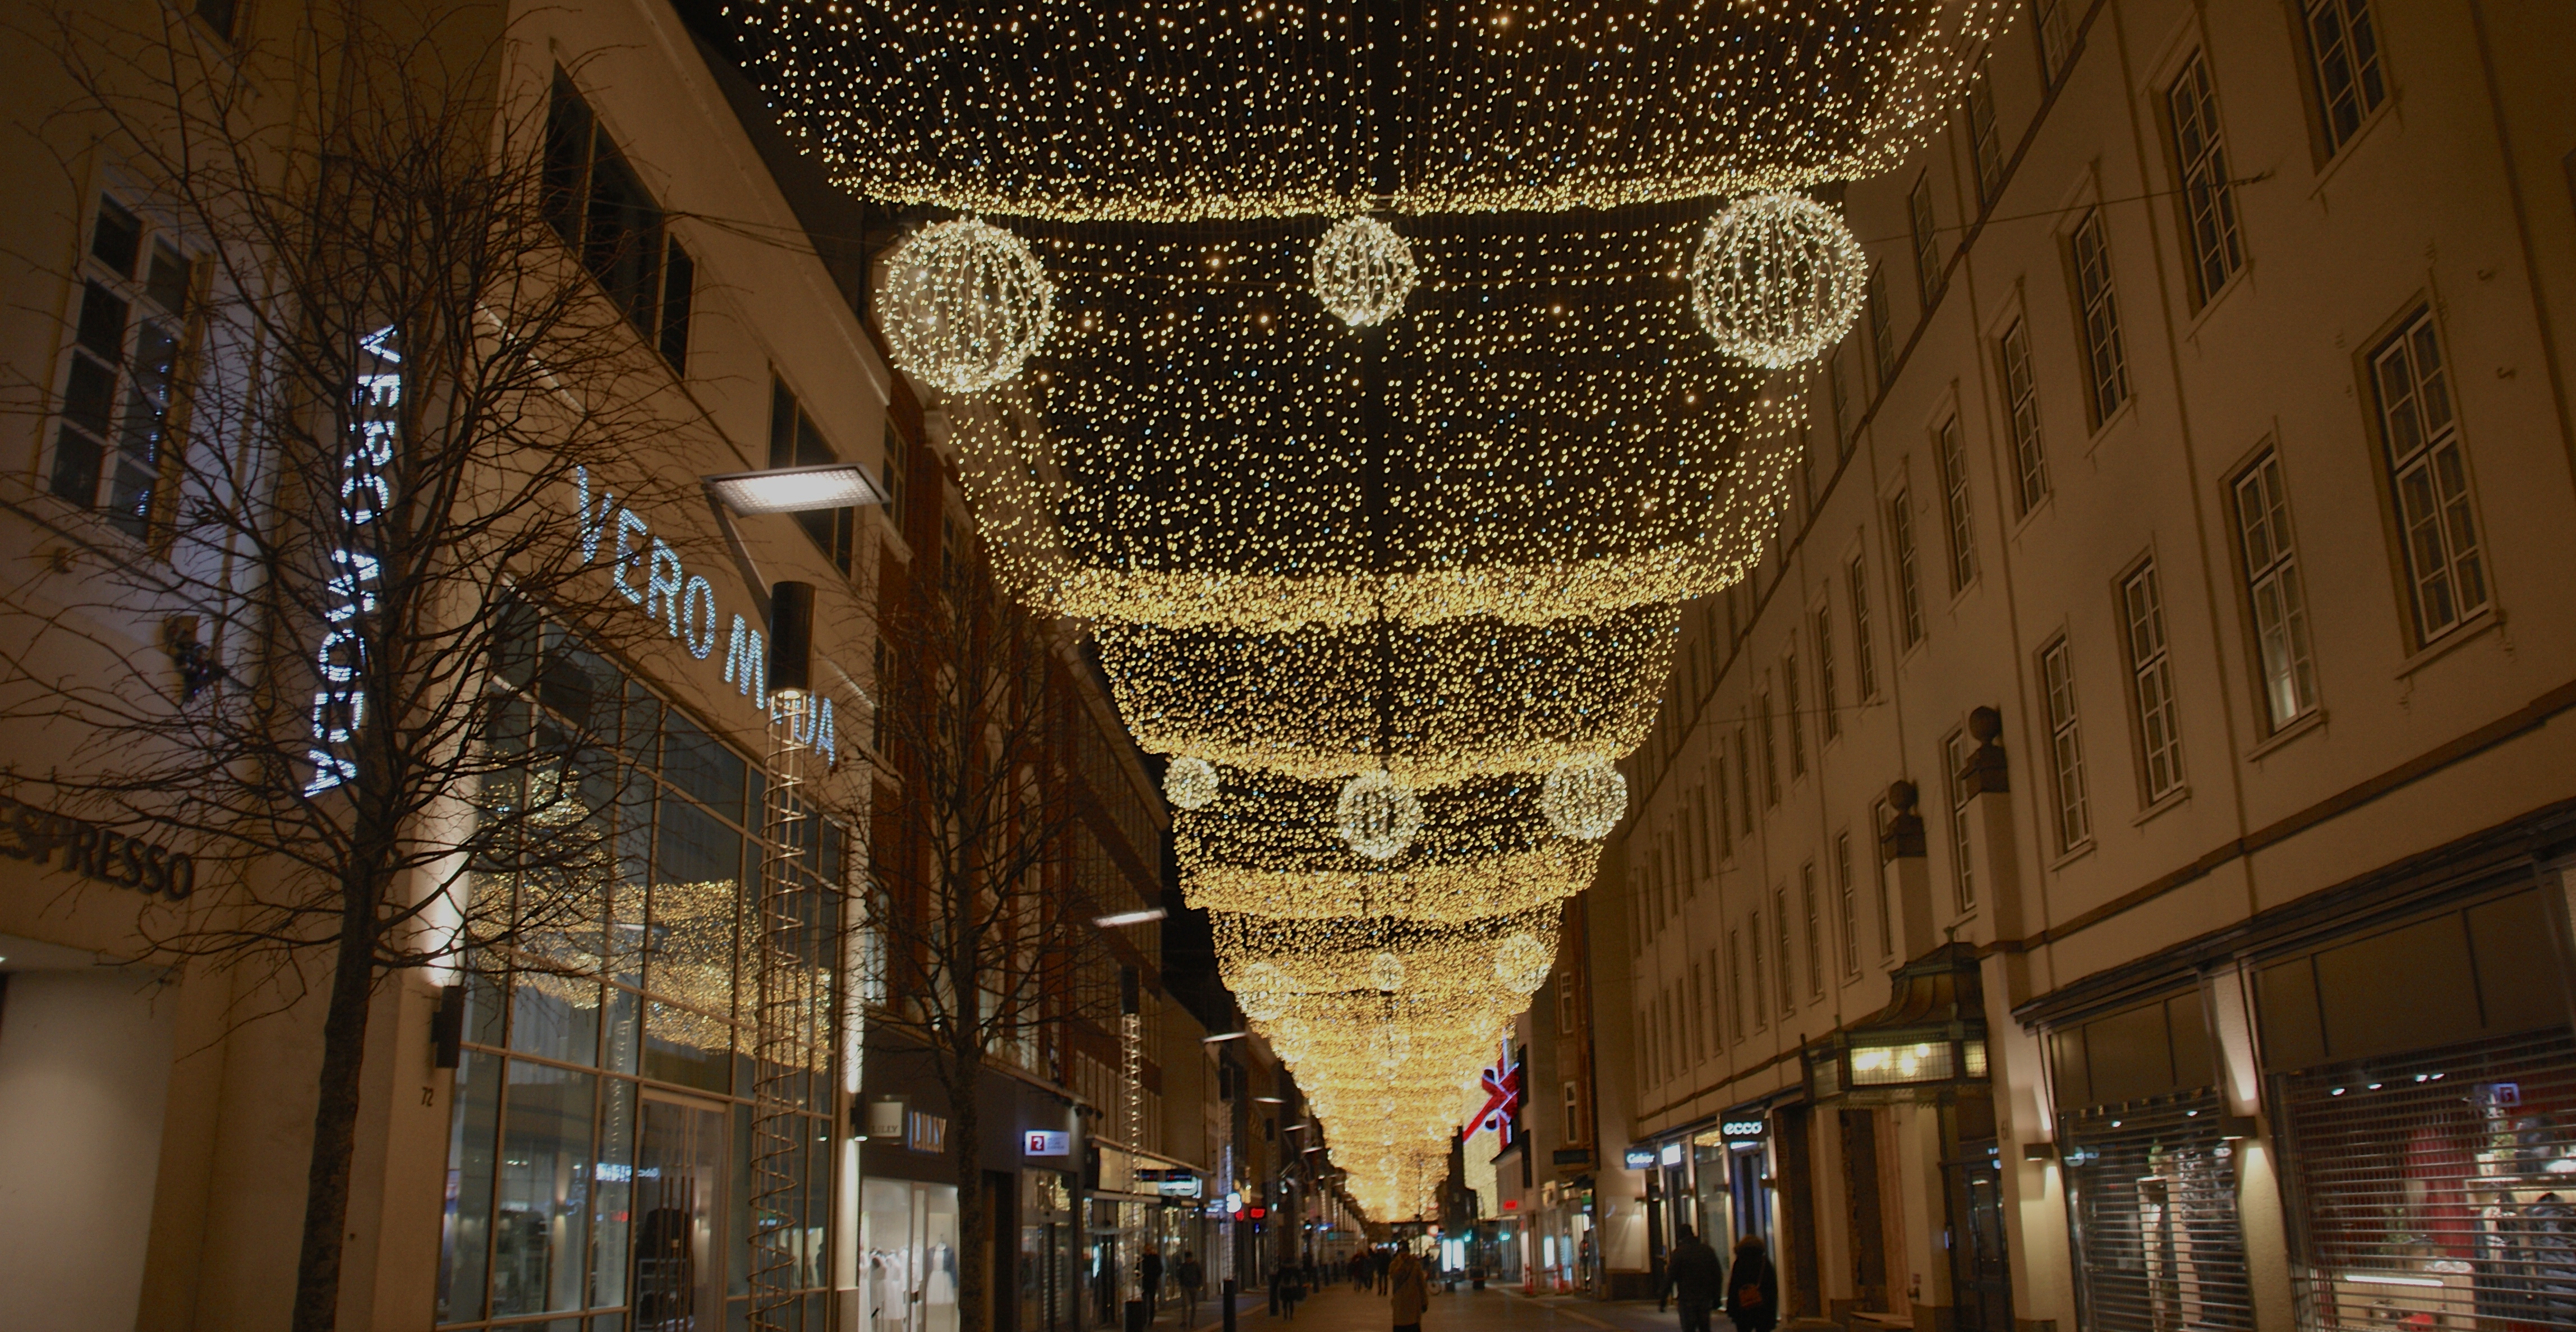 FOTOSERIE: Århus tænder julelys øjnene - VINK Aarhus